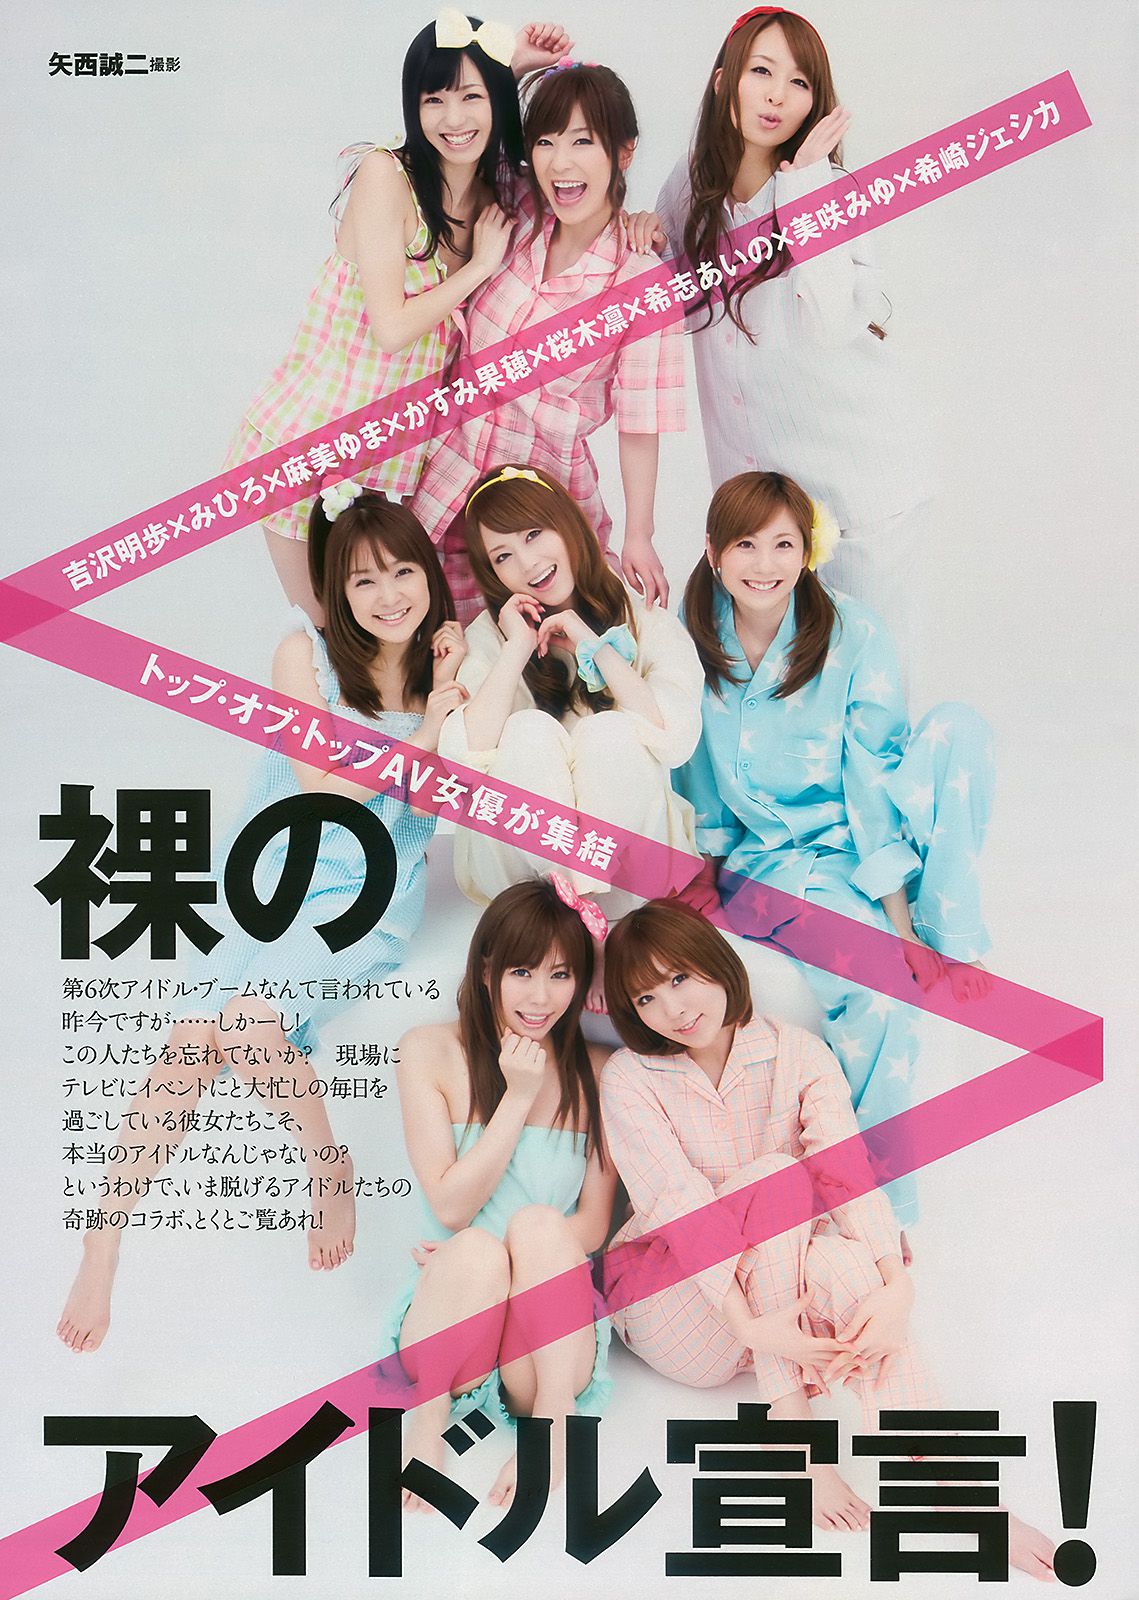 Aya Uedo, Aizawa, Kafei, AKB48 Shiraishi Miho, Goto Risa [Wöchentlicher Playboy] 2010 Nr. 19-20 Fotomagazin Seite 20 No.c717ff